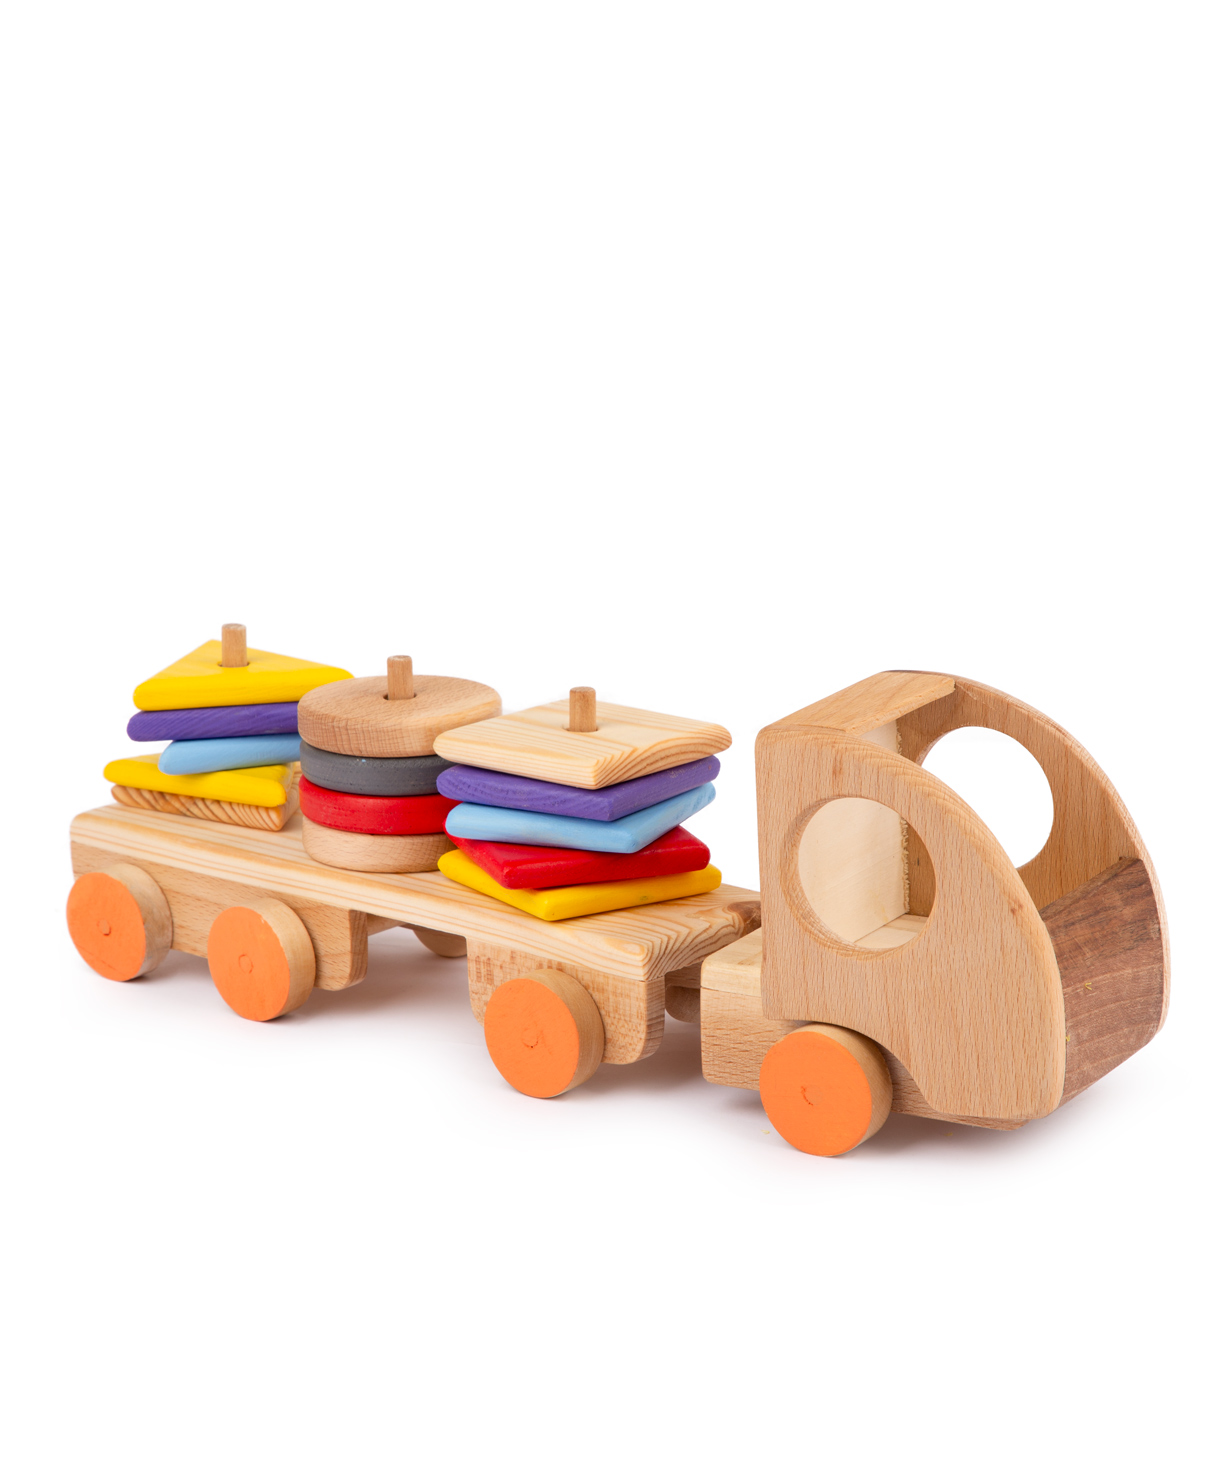 Խաղալիք «Im wooden toys» մեքենա, փայտե №7